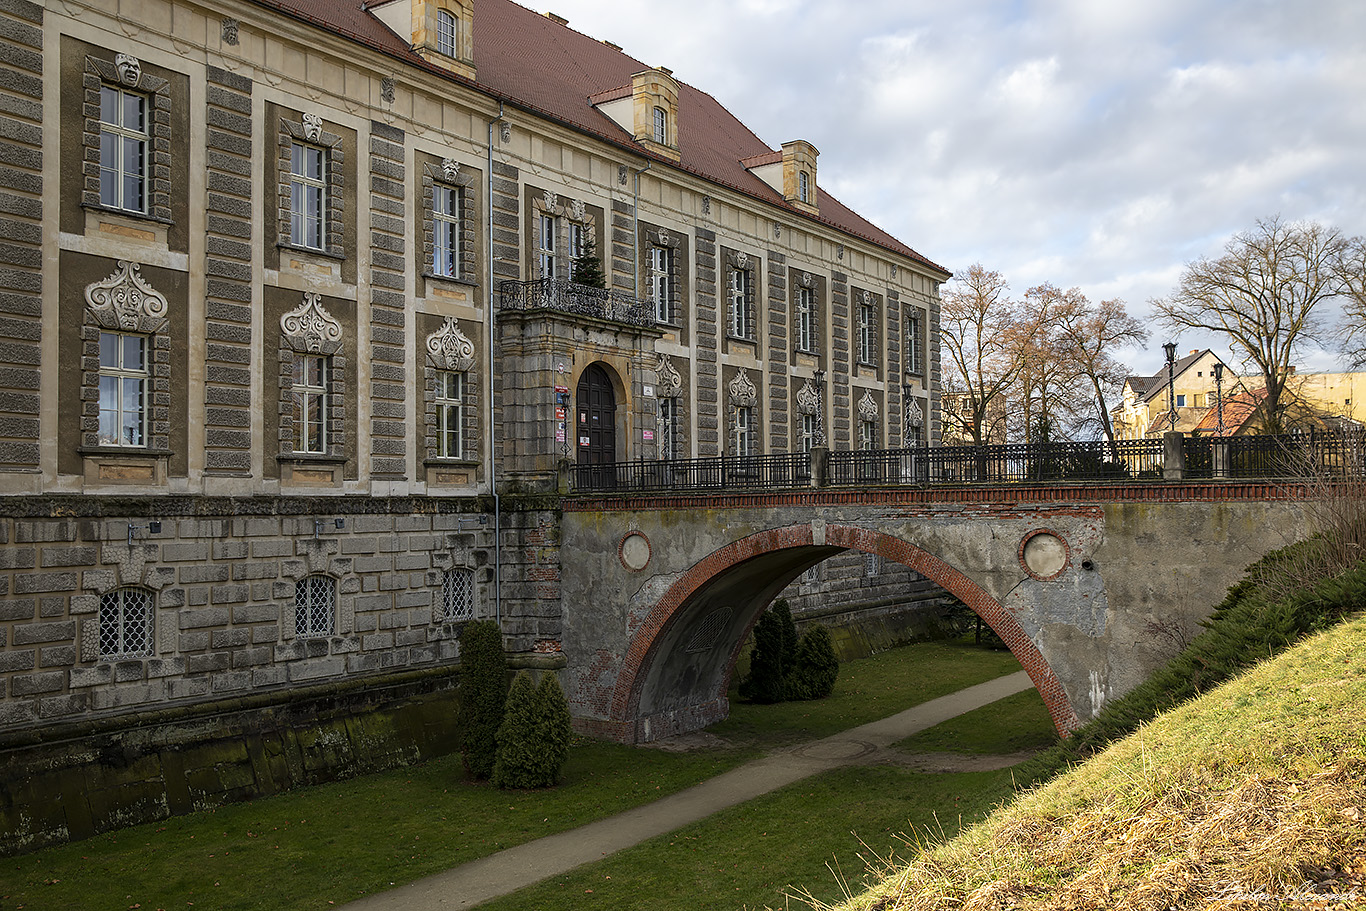 Жаганьский дворец (Pałac Książęcy) - Жагань (Żagań) - Польша (Polska)